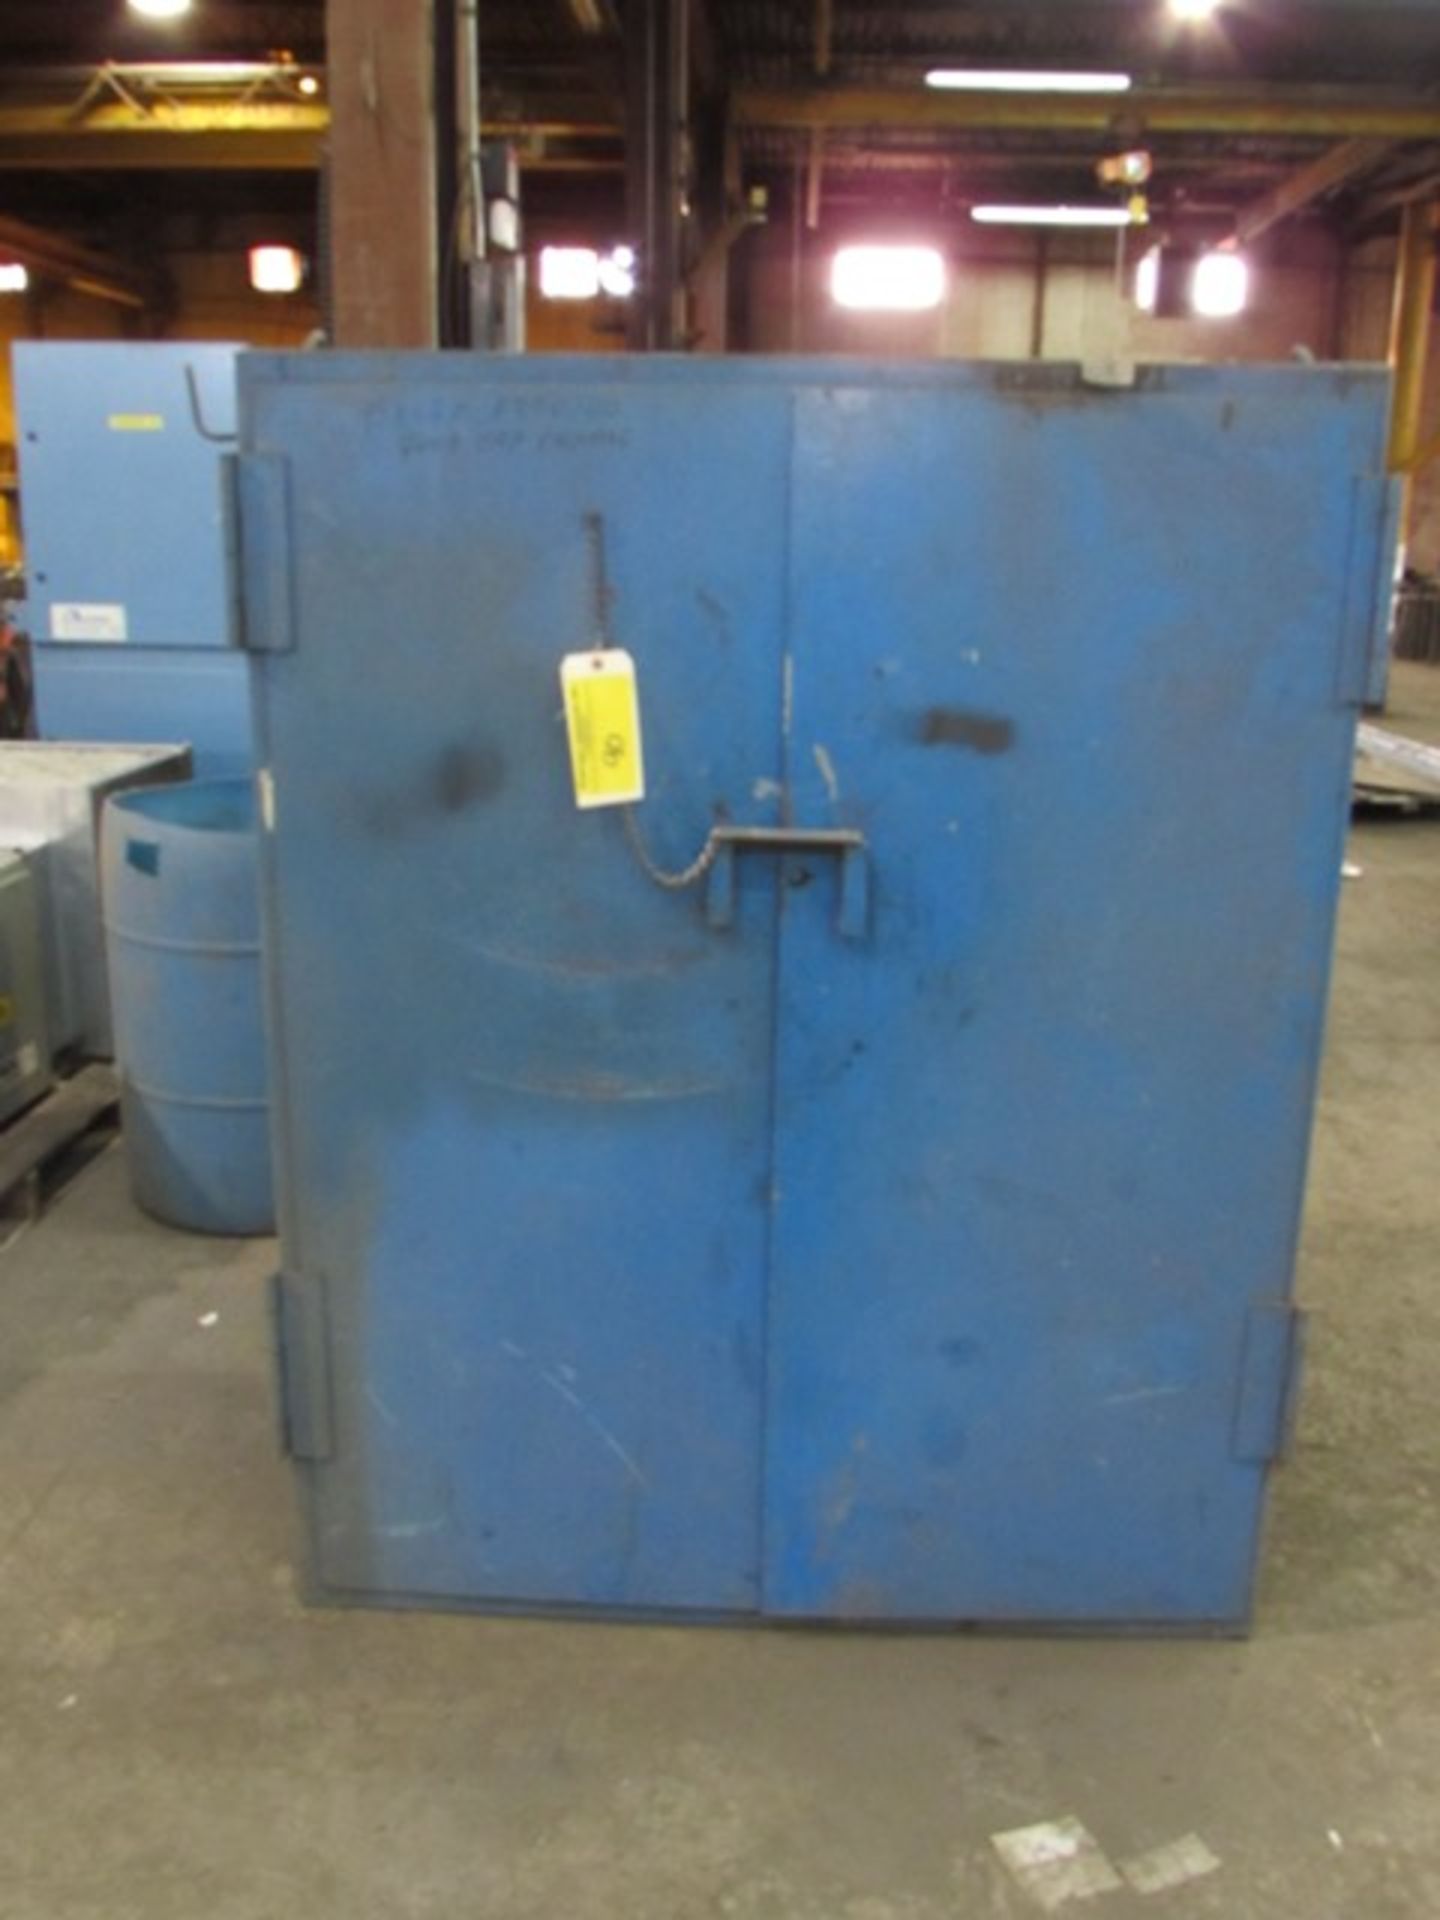 Blue metal 2-door storage cabinet